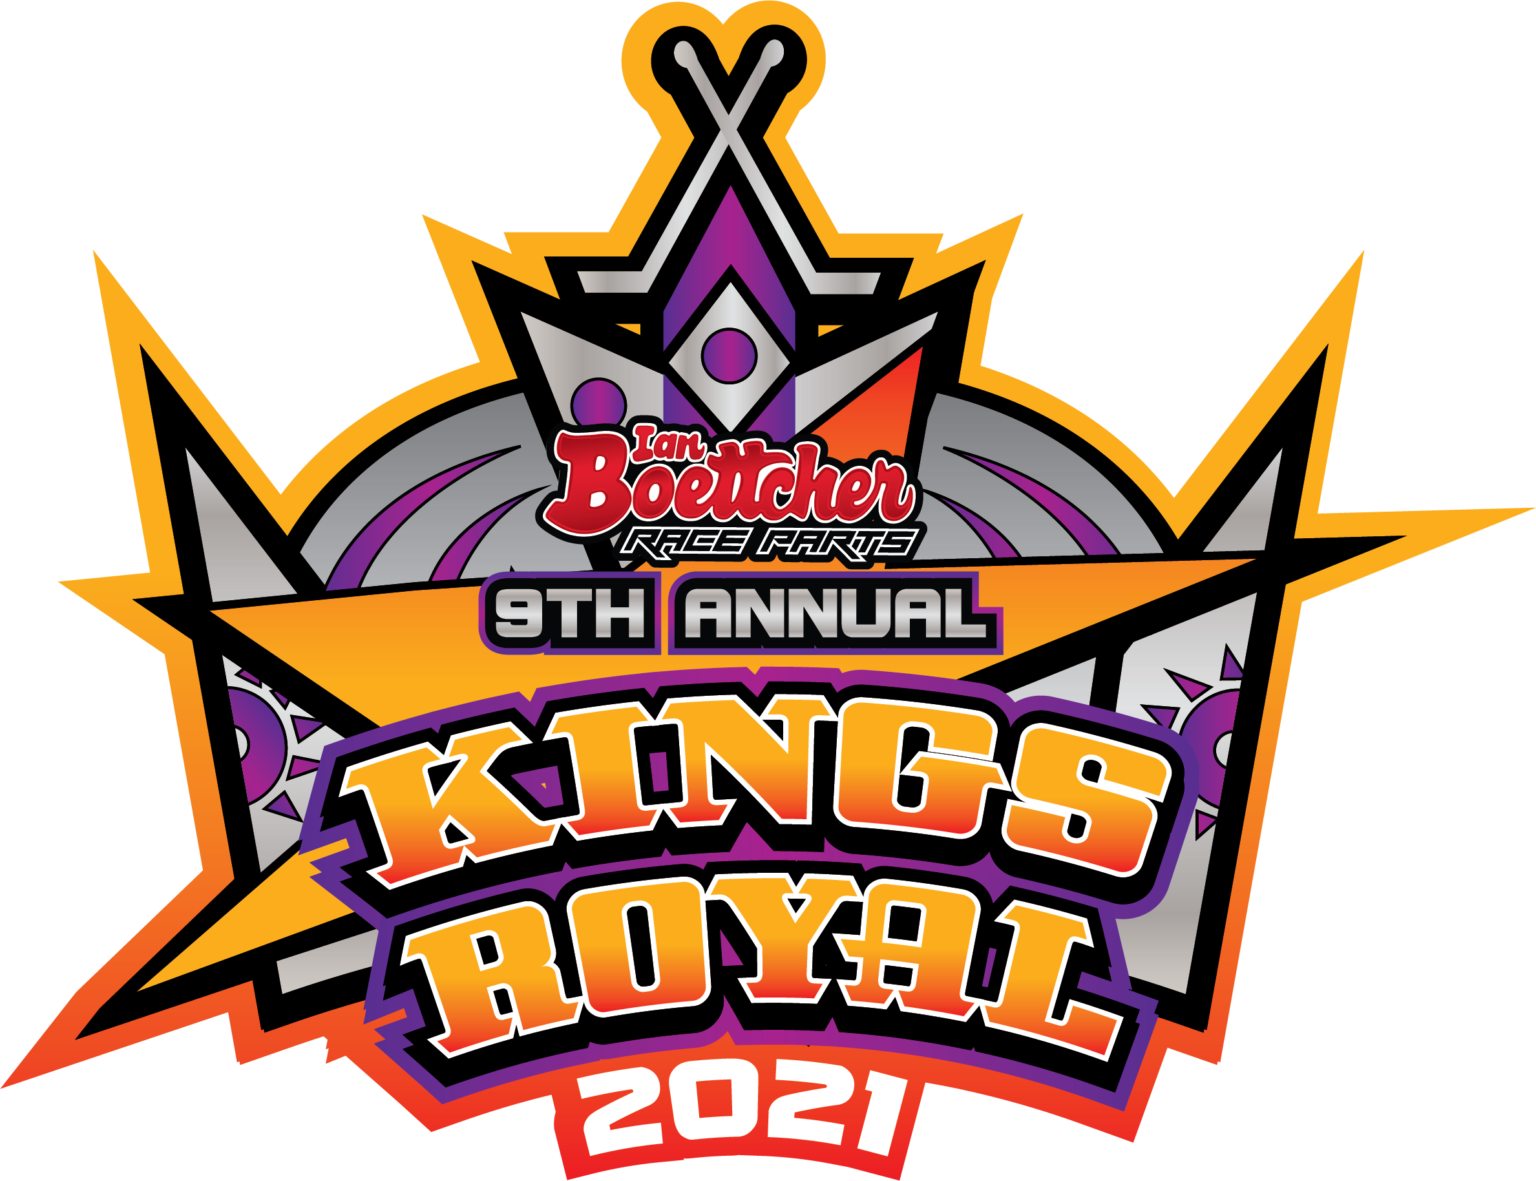 Kings Royal Returns Kingaroy Speedway